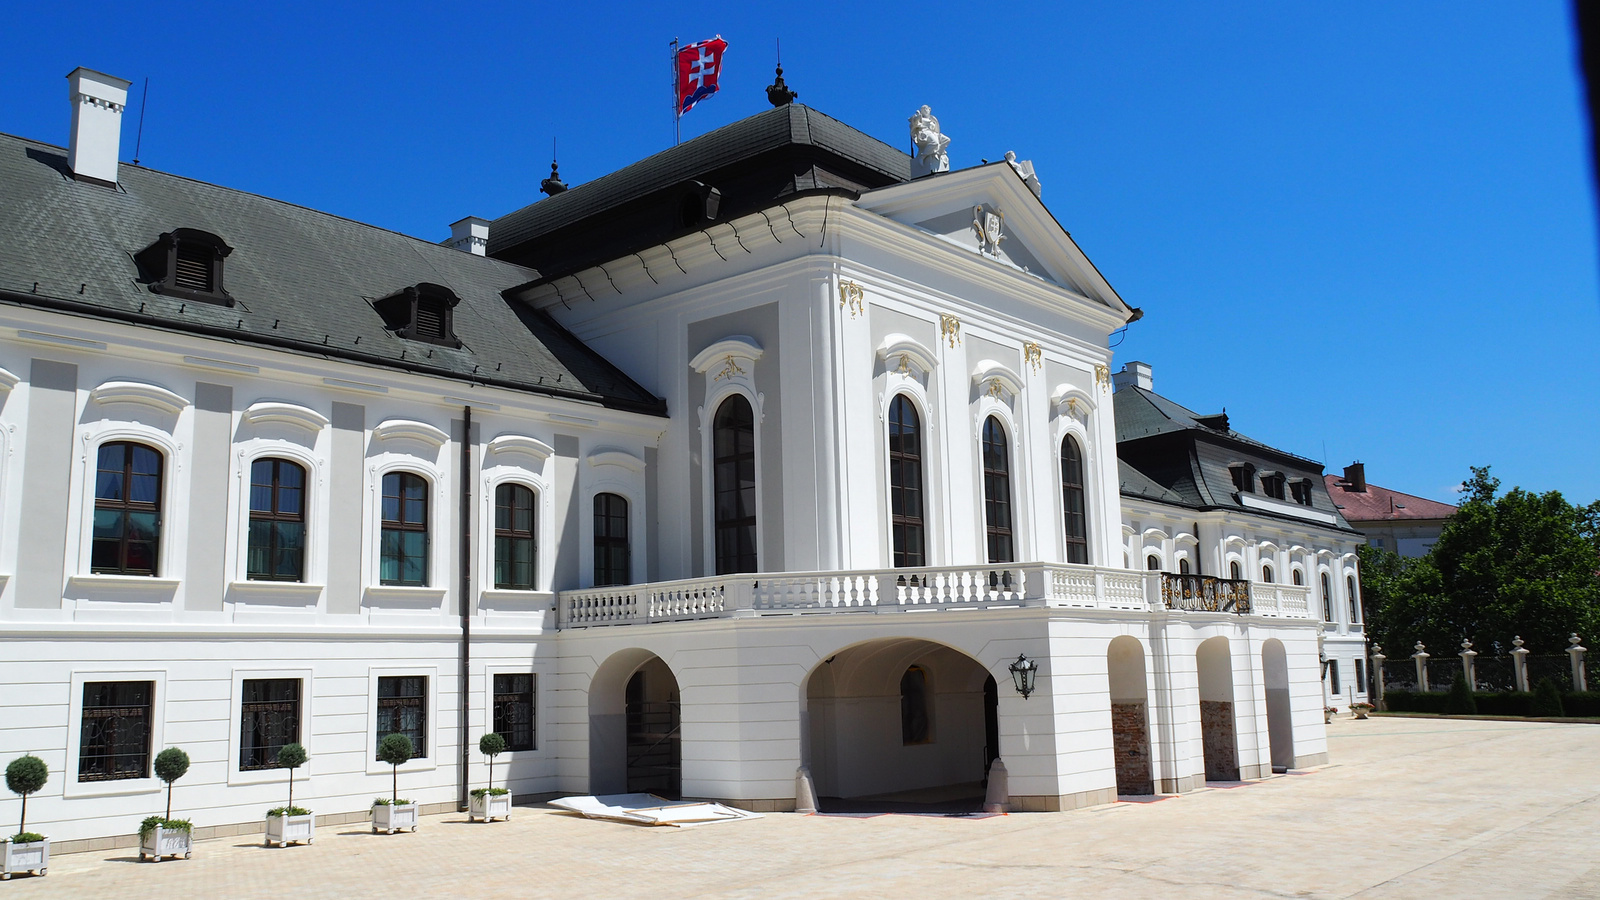 Pozsony, Grassalkovich (elnöki) palota, SzG3